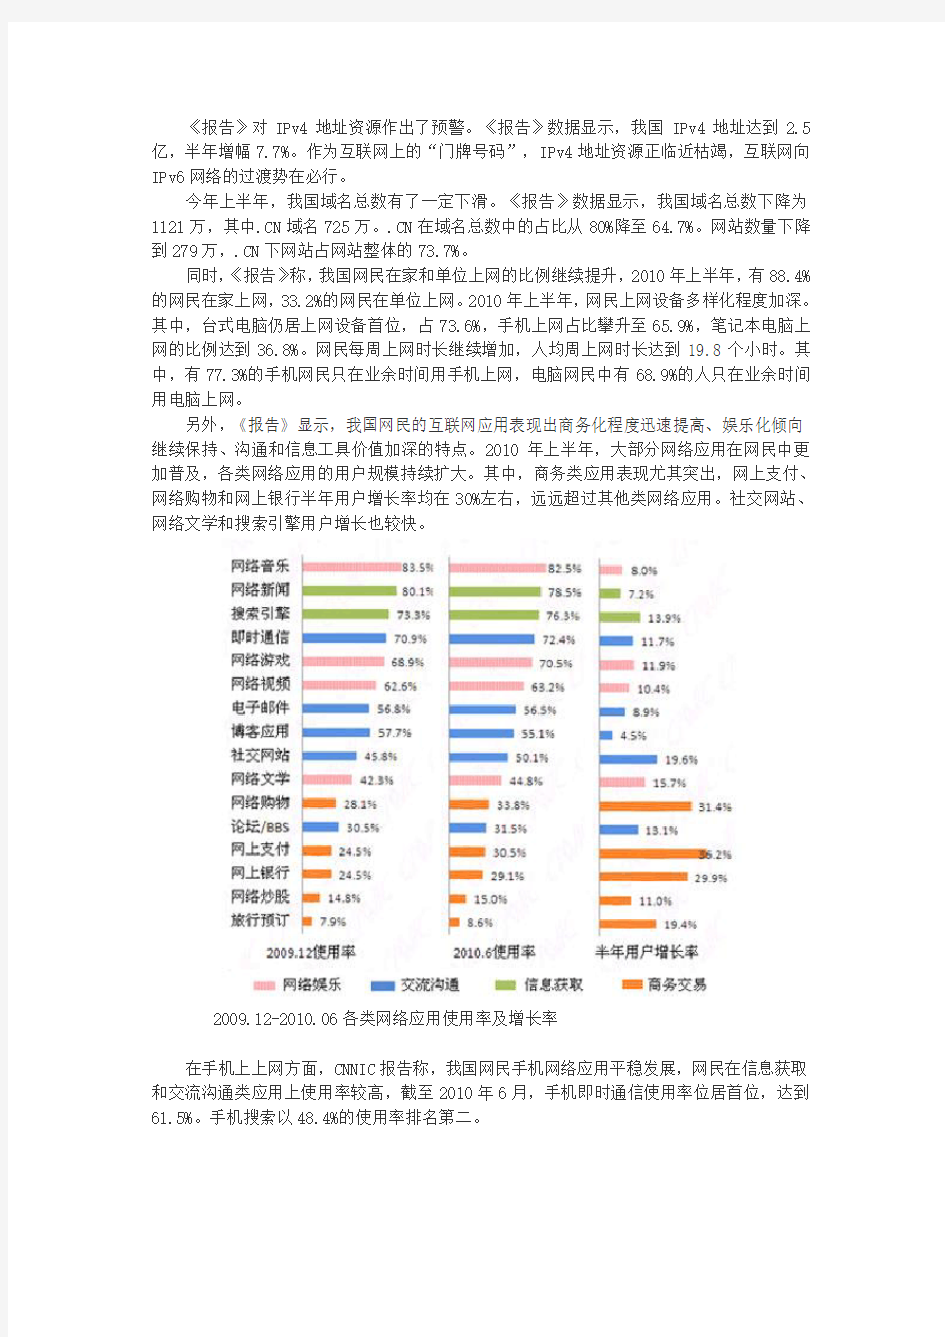 CNNIC第26次中国互联网络发展状况统计报告